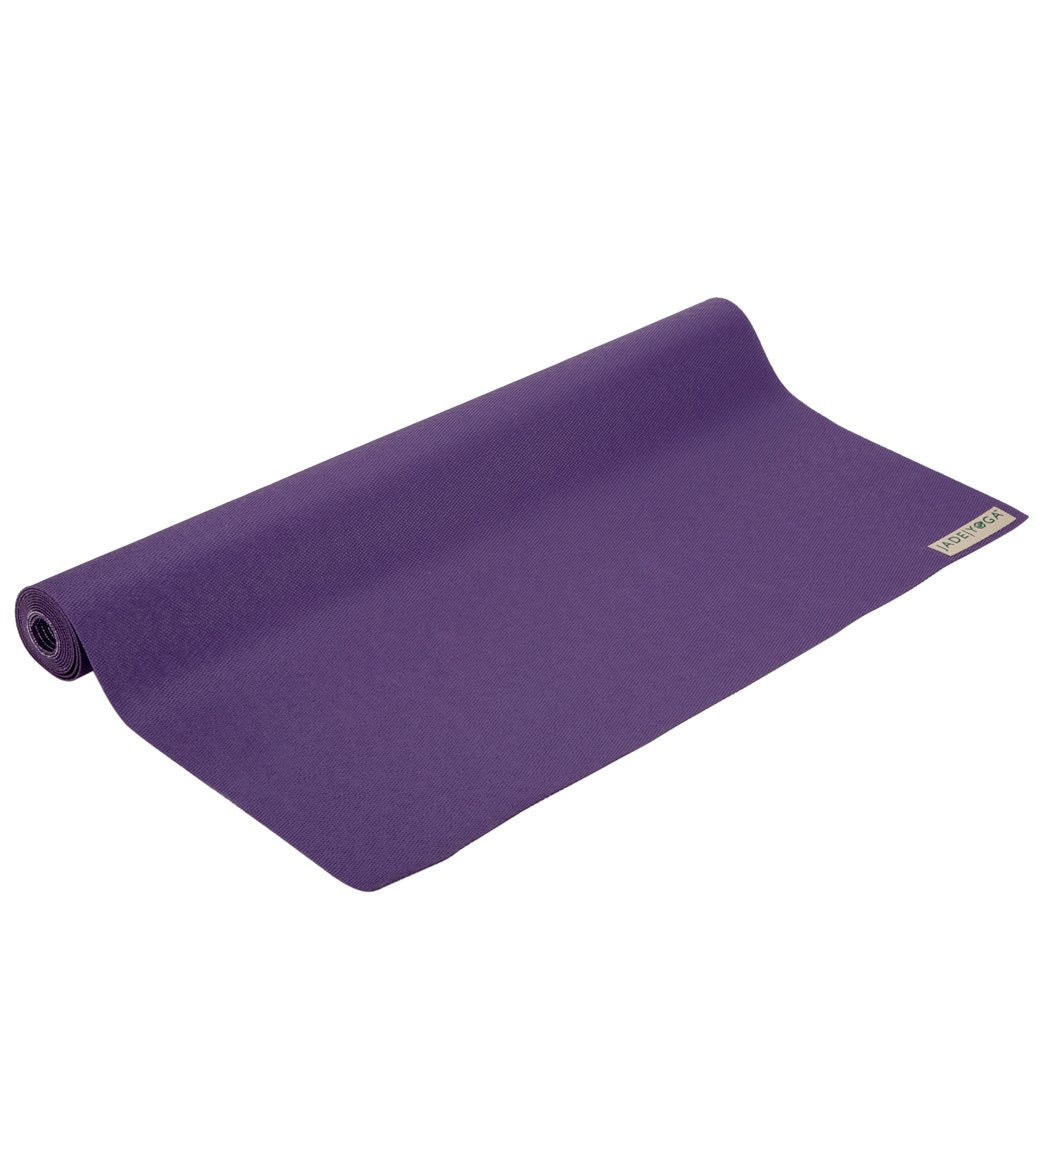 https://www.everydayyoga.com/cdn/shop/products/1740127731747-purple-1a.jpg?v=1615332761